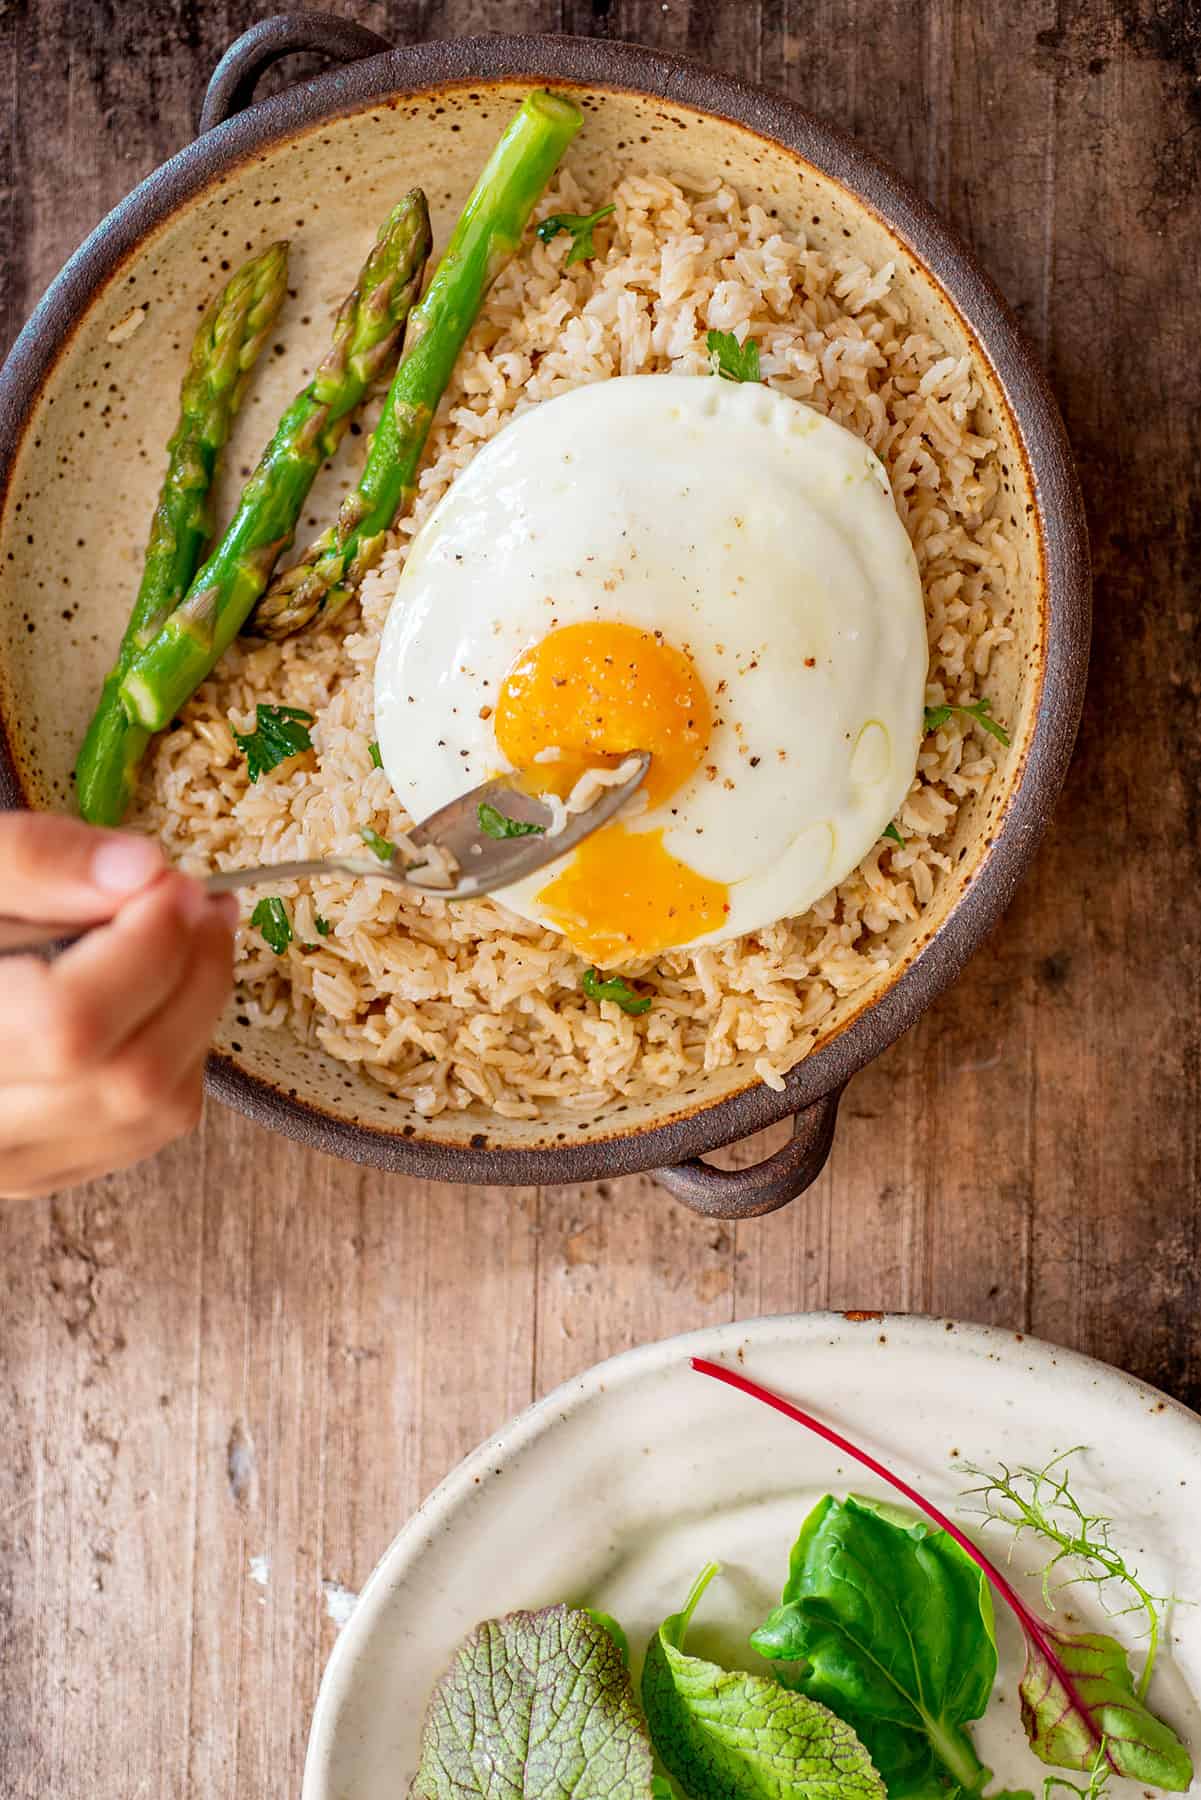 Plato de arroz integral, servido con huevo.